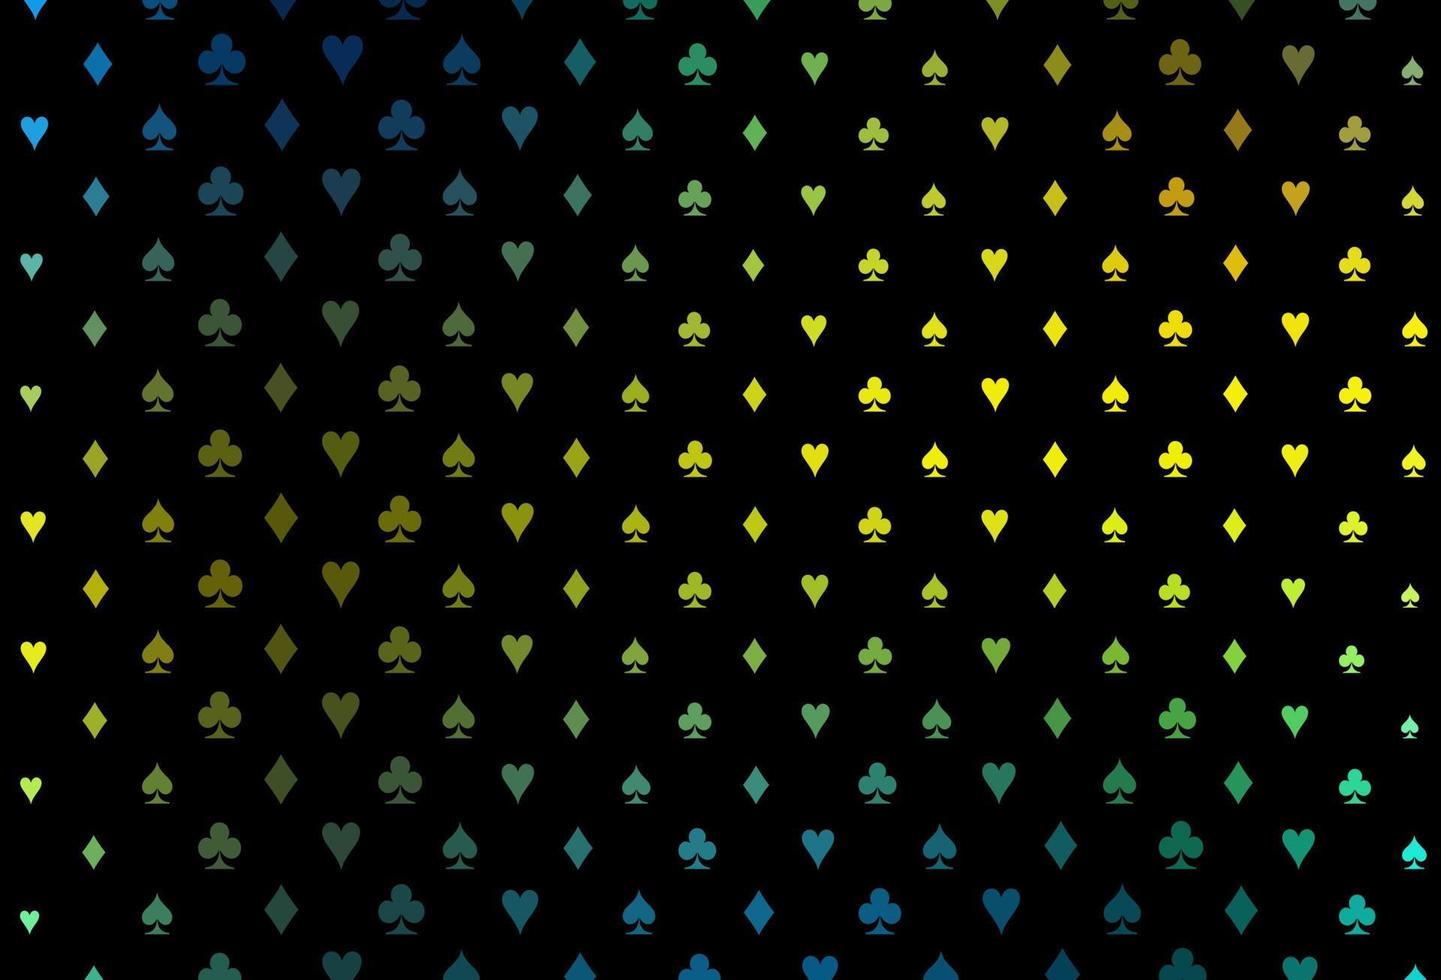 padrão de vetor azul escuro, amarelo com símbolo de cartas.